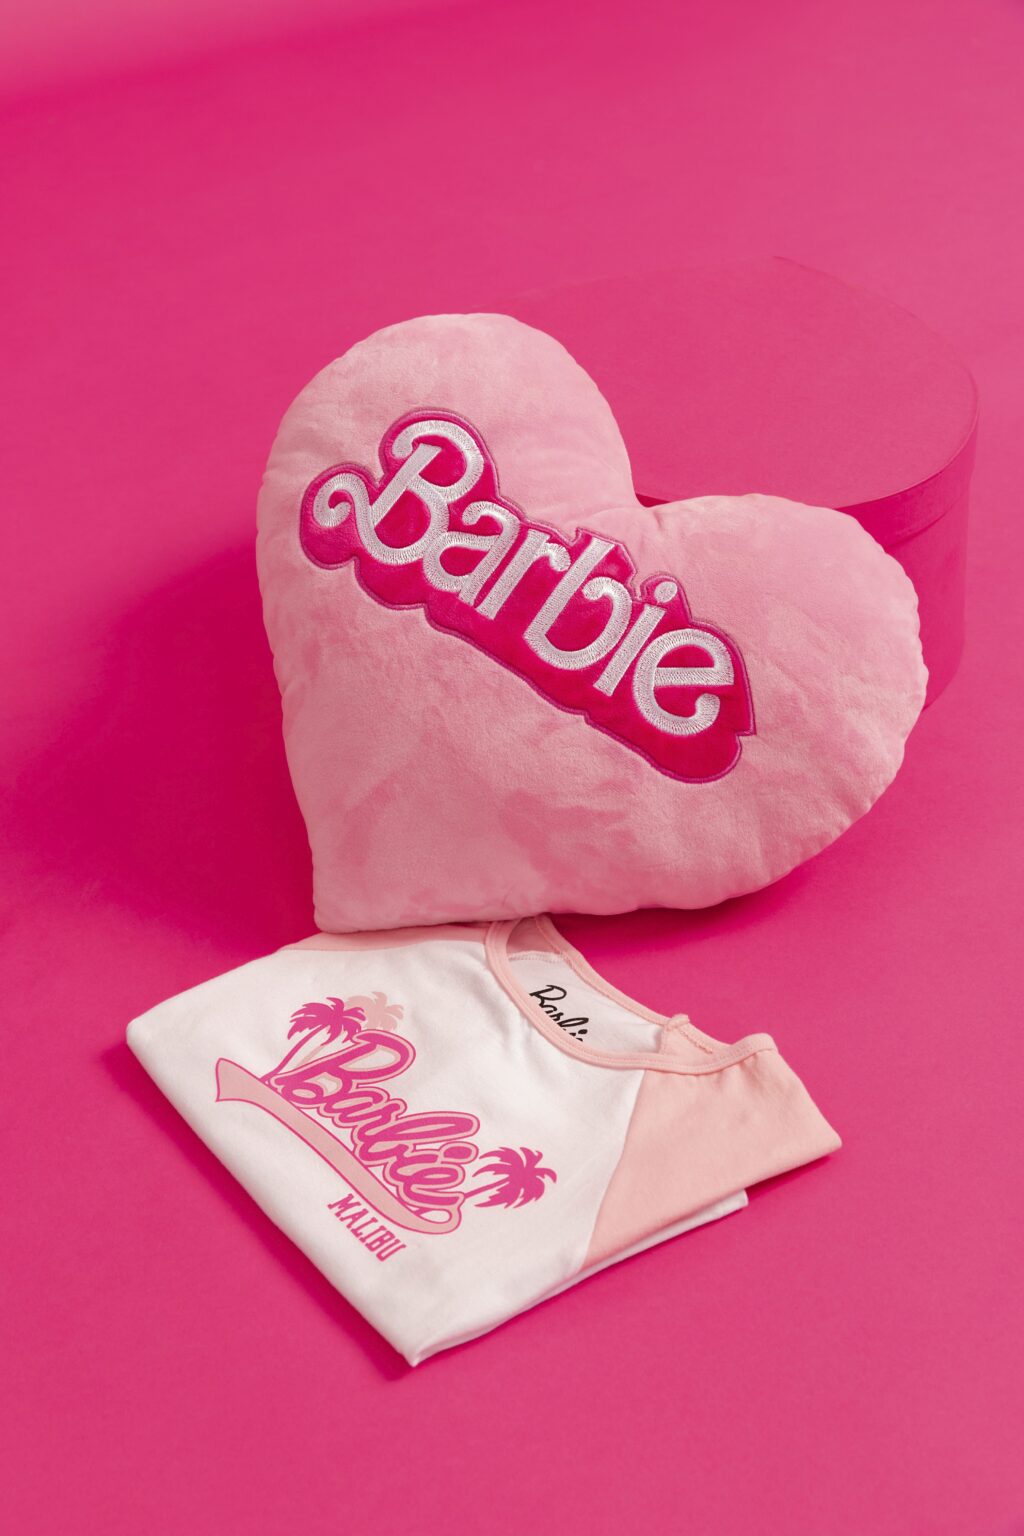 C&A coleção da Barbie almofada